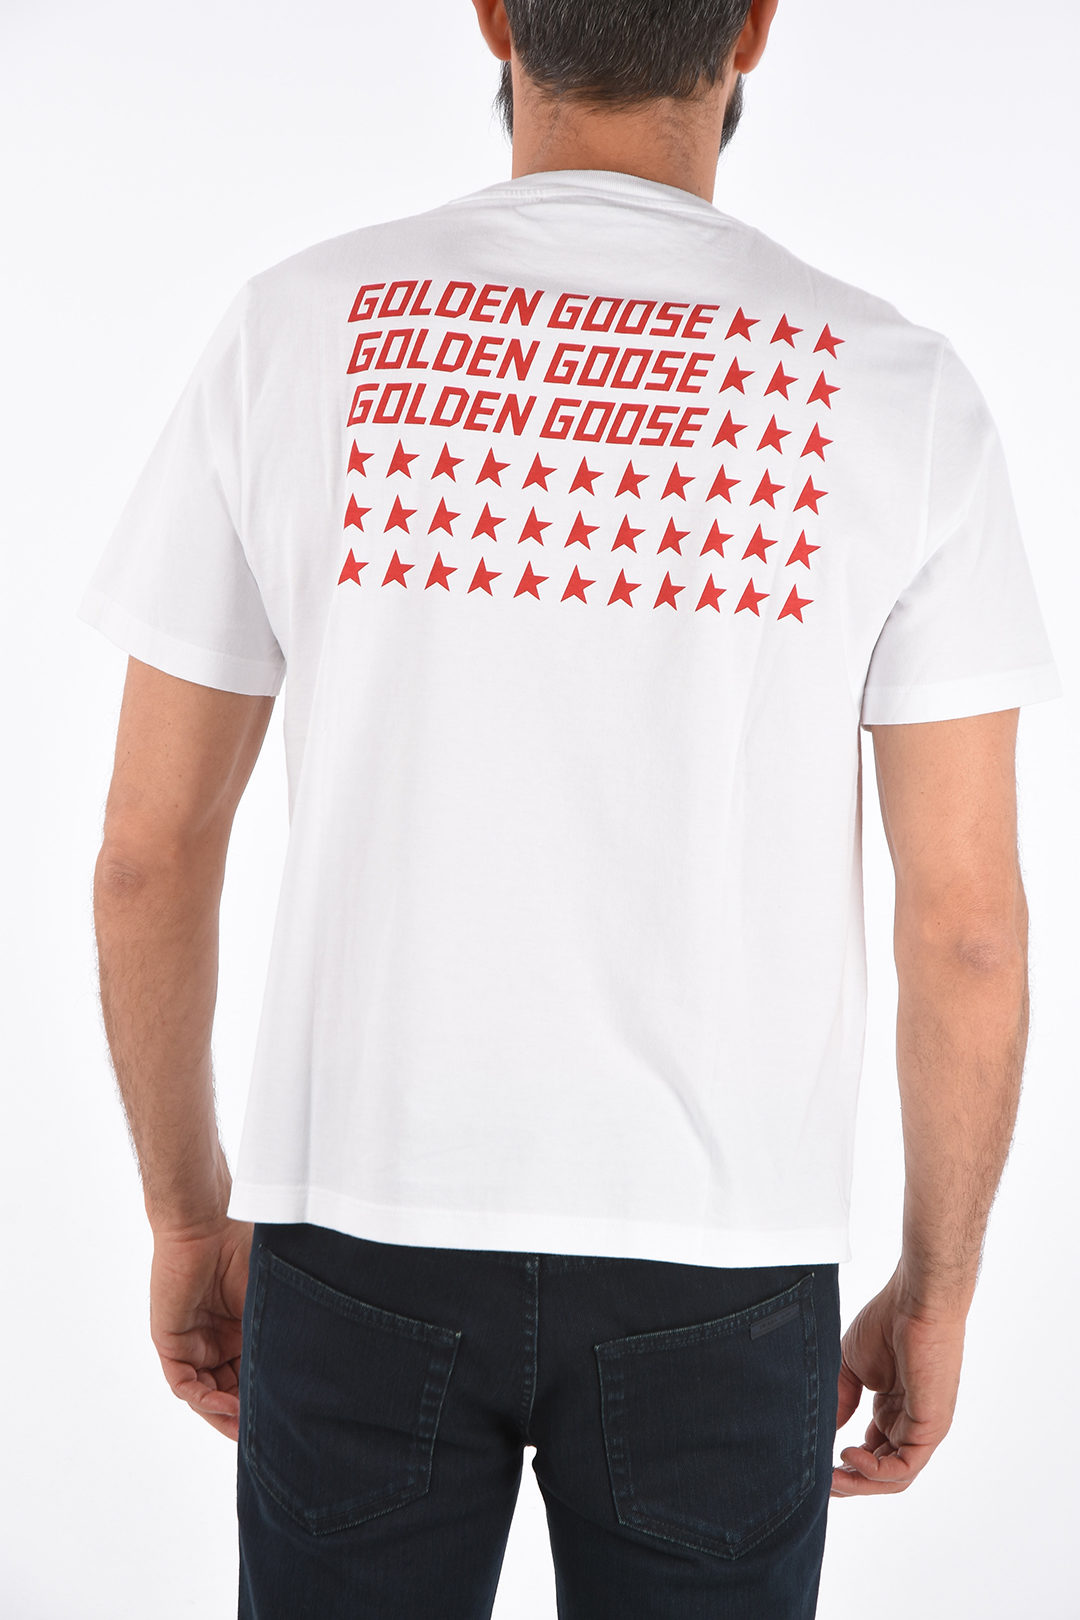 Golden Goose printed t-shirt men - Glamood Outlet